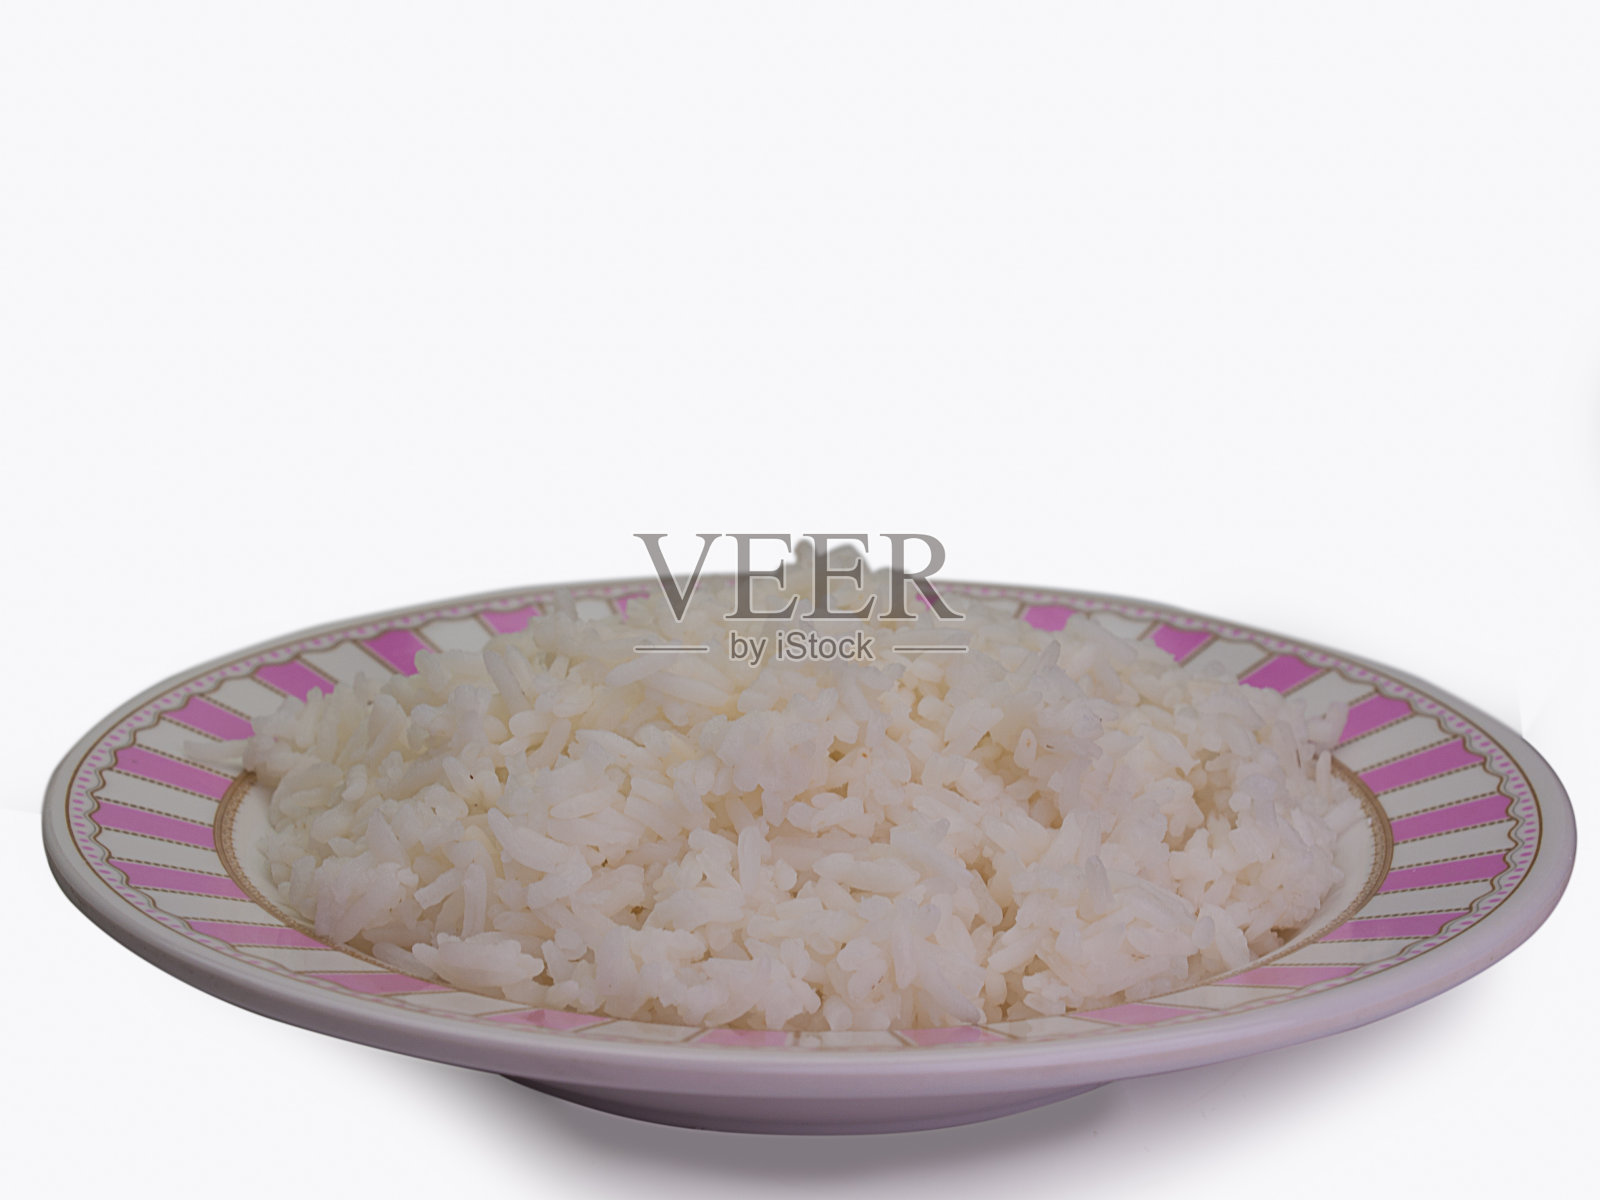 碗里装满了白米饭。照片摄影图片